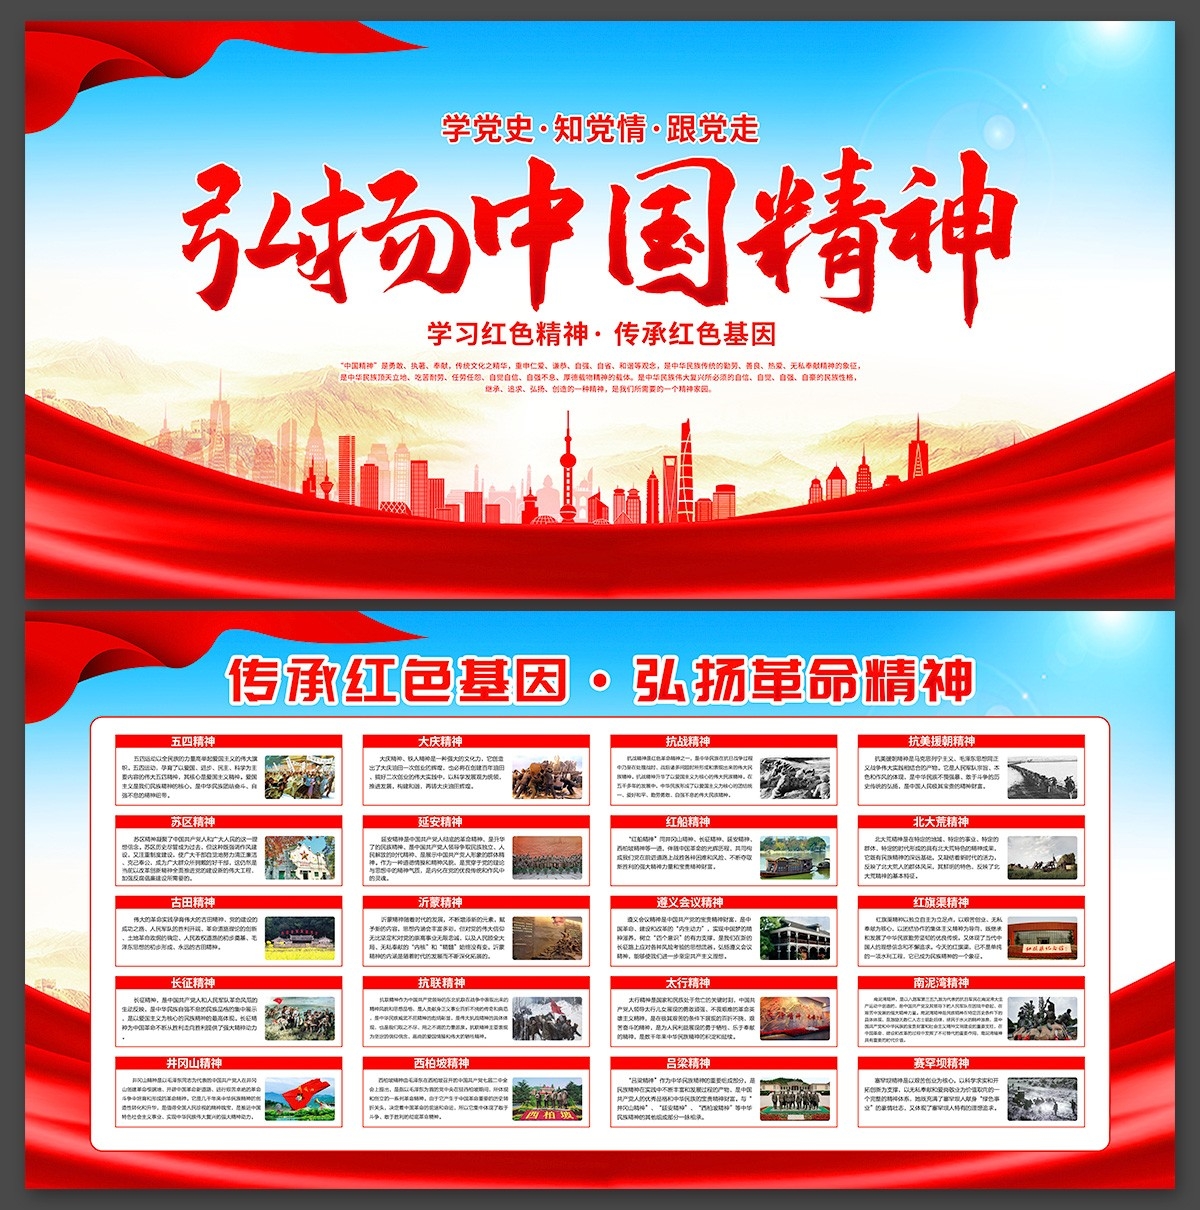 弘扬中国精神谱系红色主题展板海报挂图素材 (20)